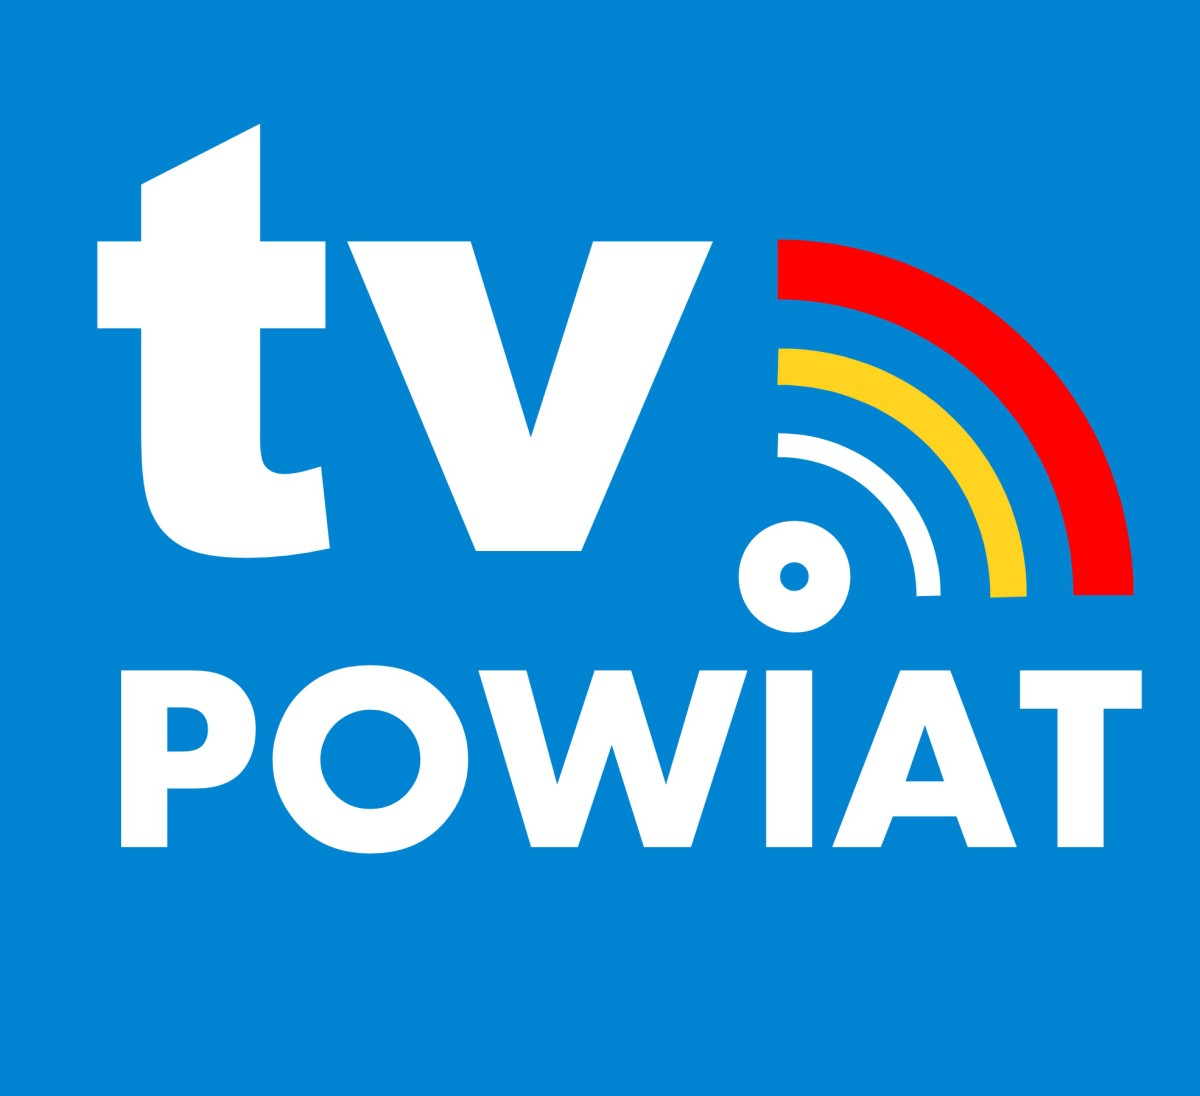 logo tv powiat - błękitne tło biały napis tv powiat  trzy łuki nad litera I czerwony, żółty, biały